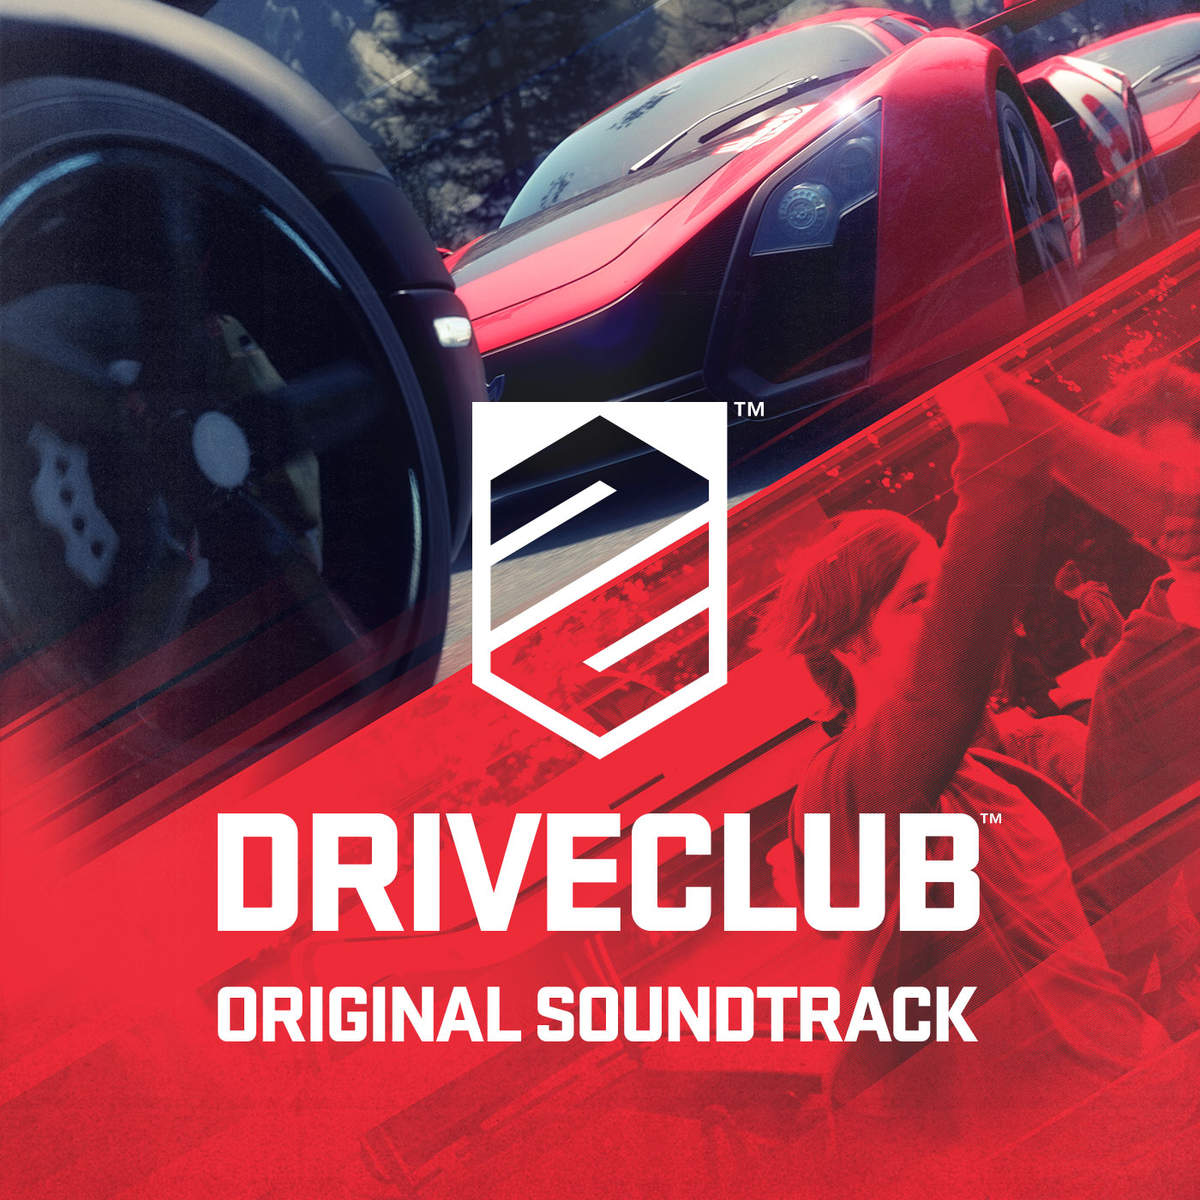 Driveclub_Original_Soundtrack__cover1200x1200.jpeg